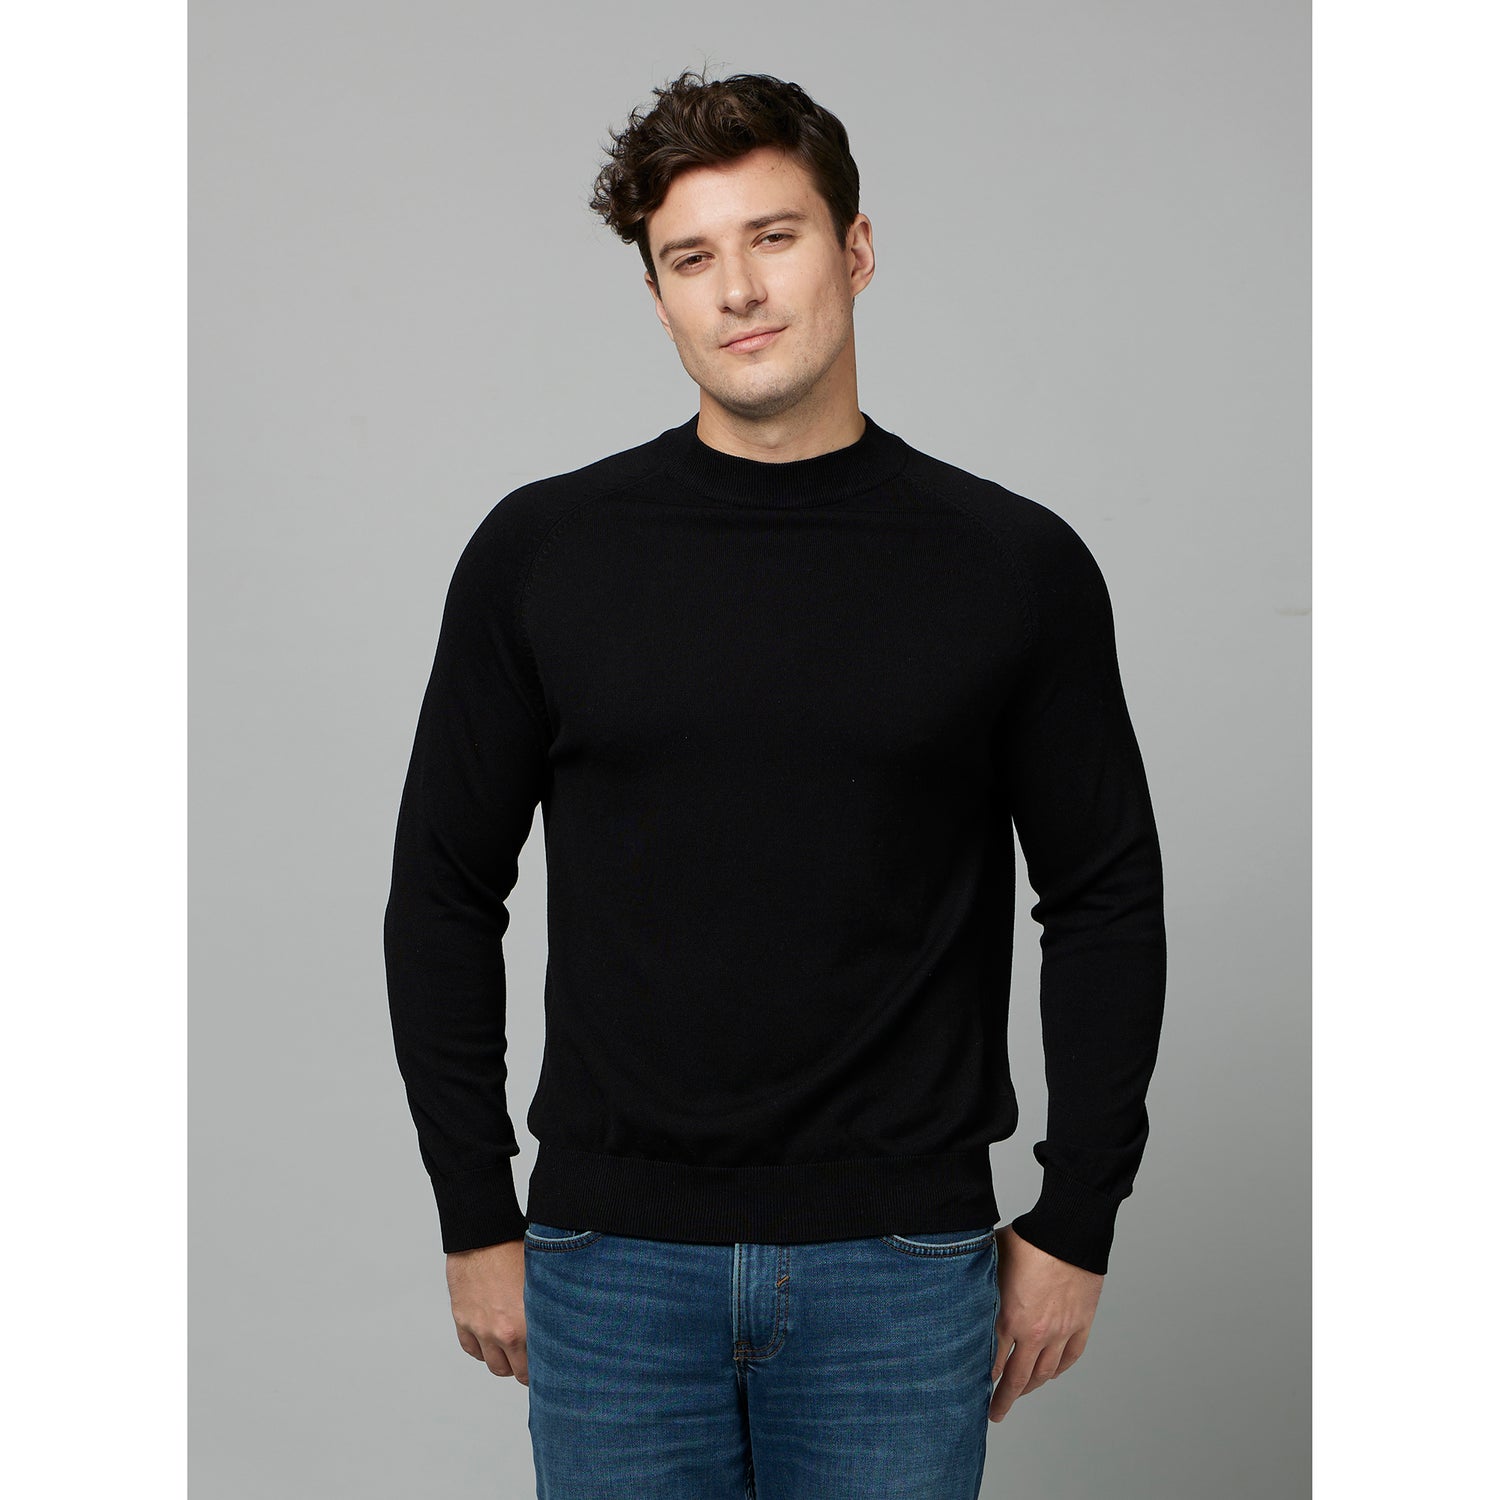 Black Round Neck Cotton Pullover Sweater (FEHIGH)